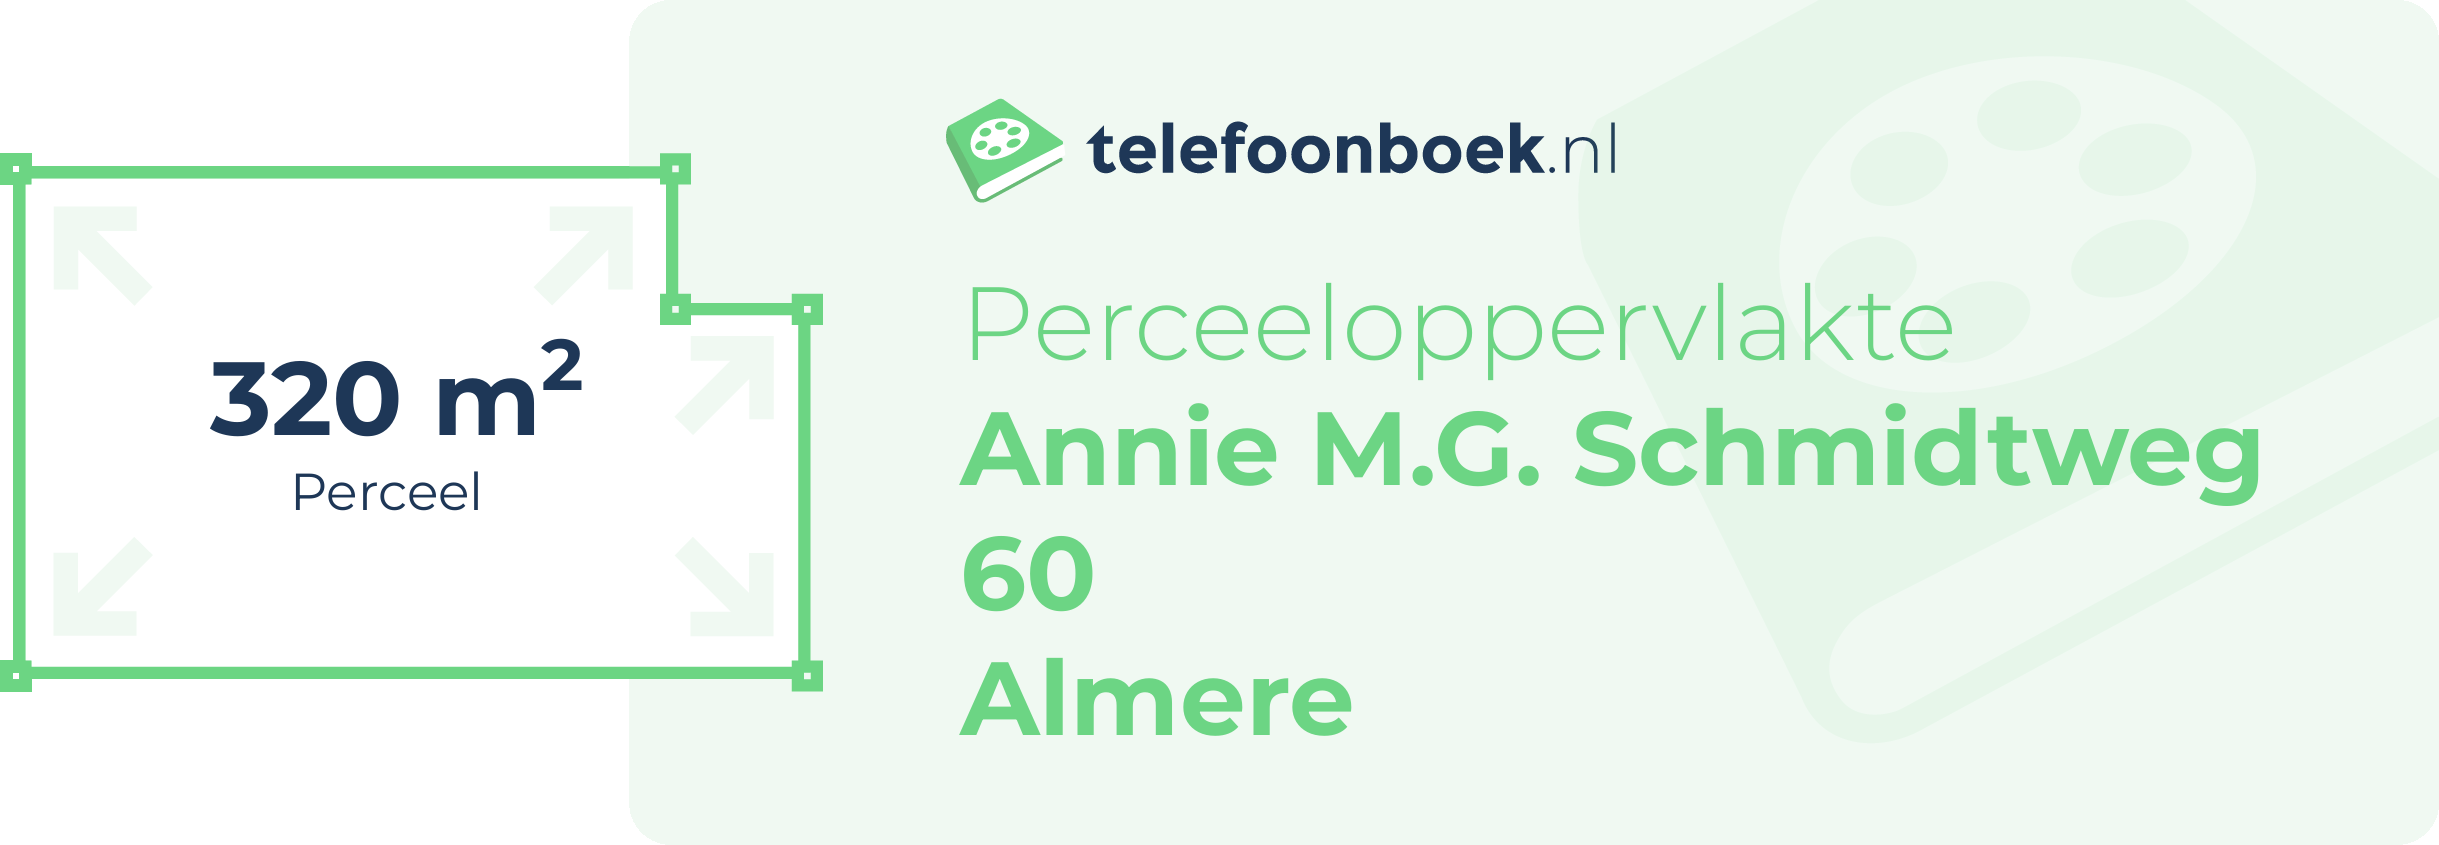 Perceeloppervlakte Annie M.G. Schmidtweg 60 Almere